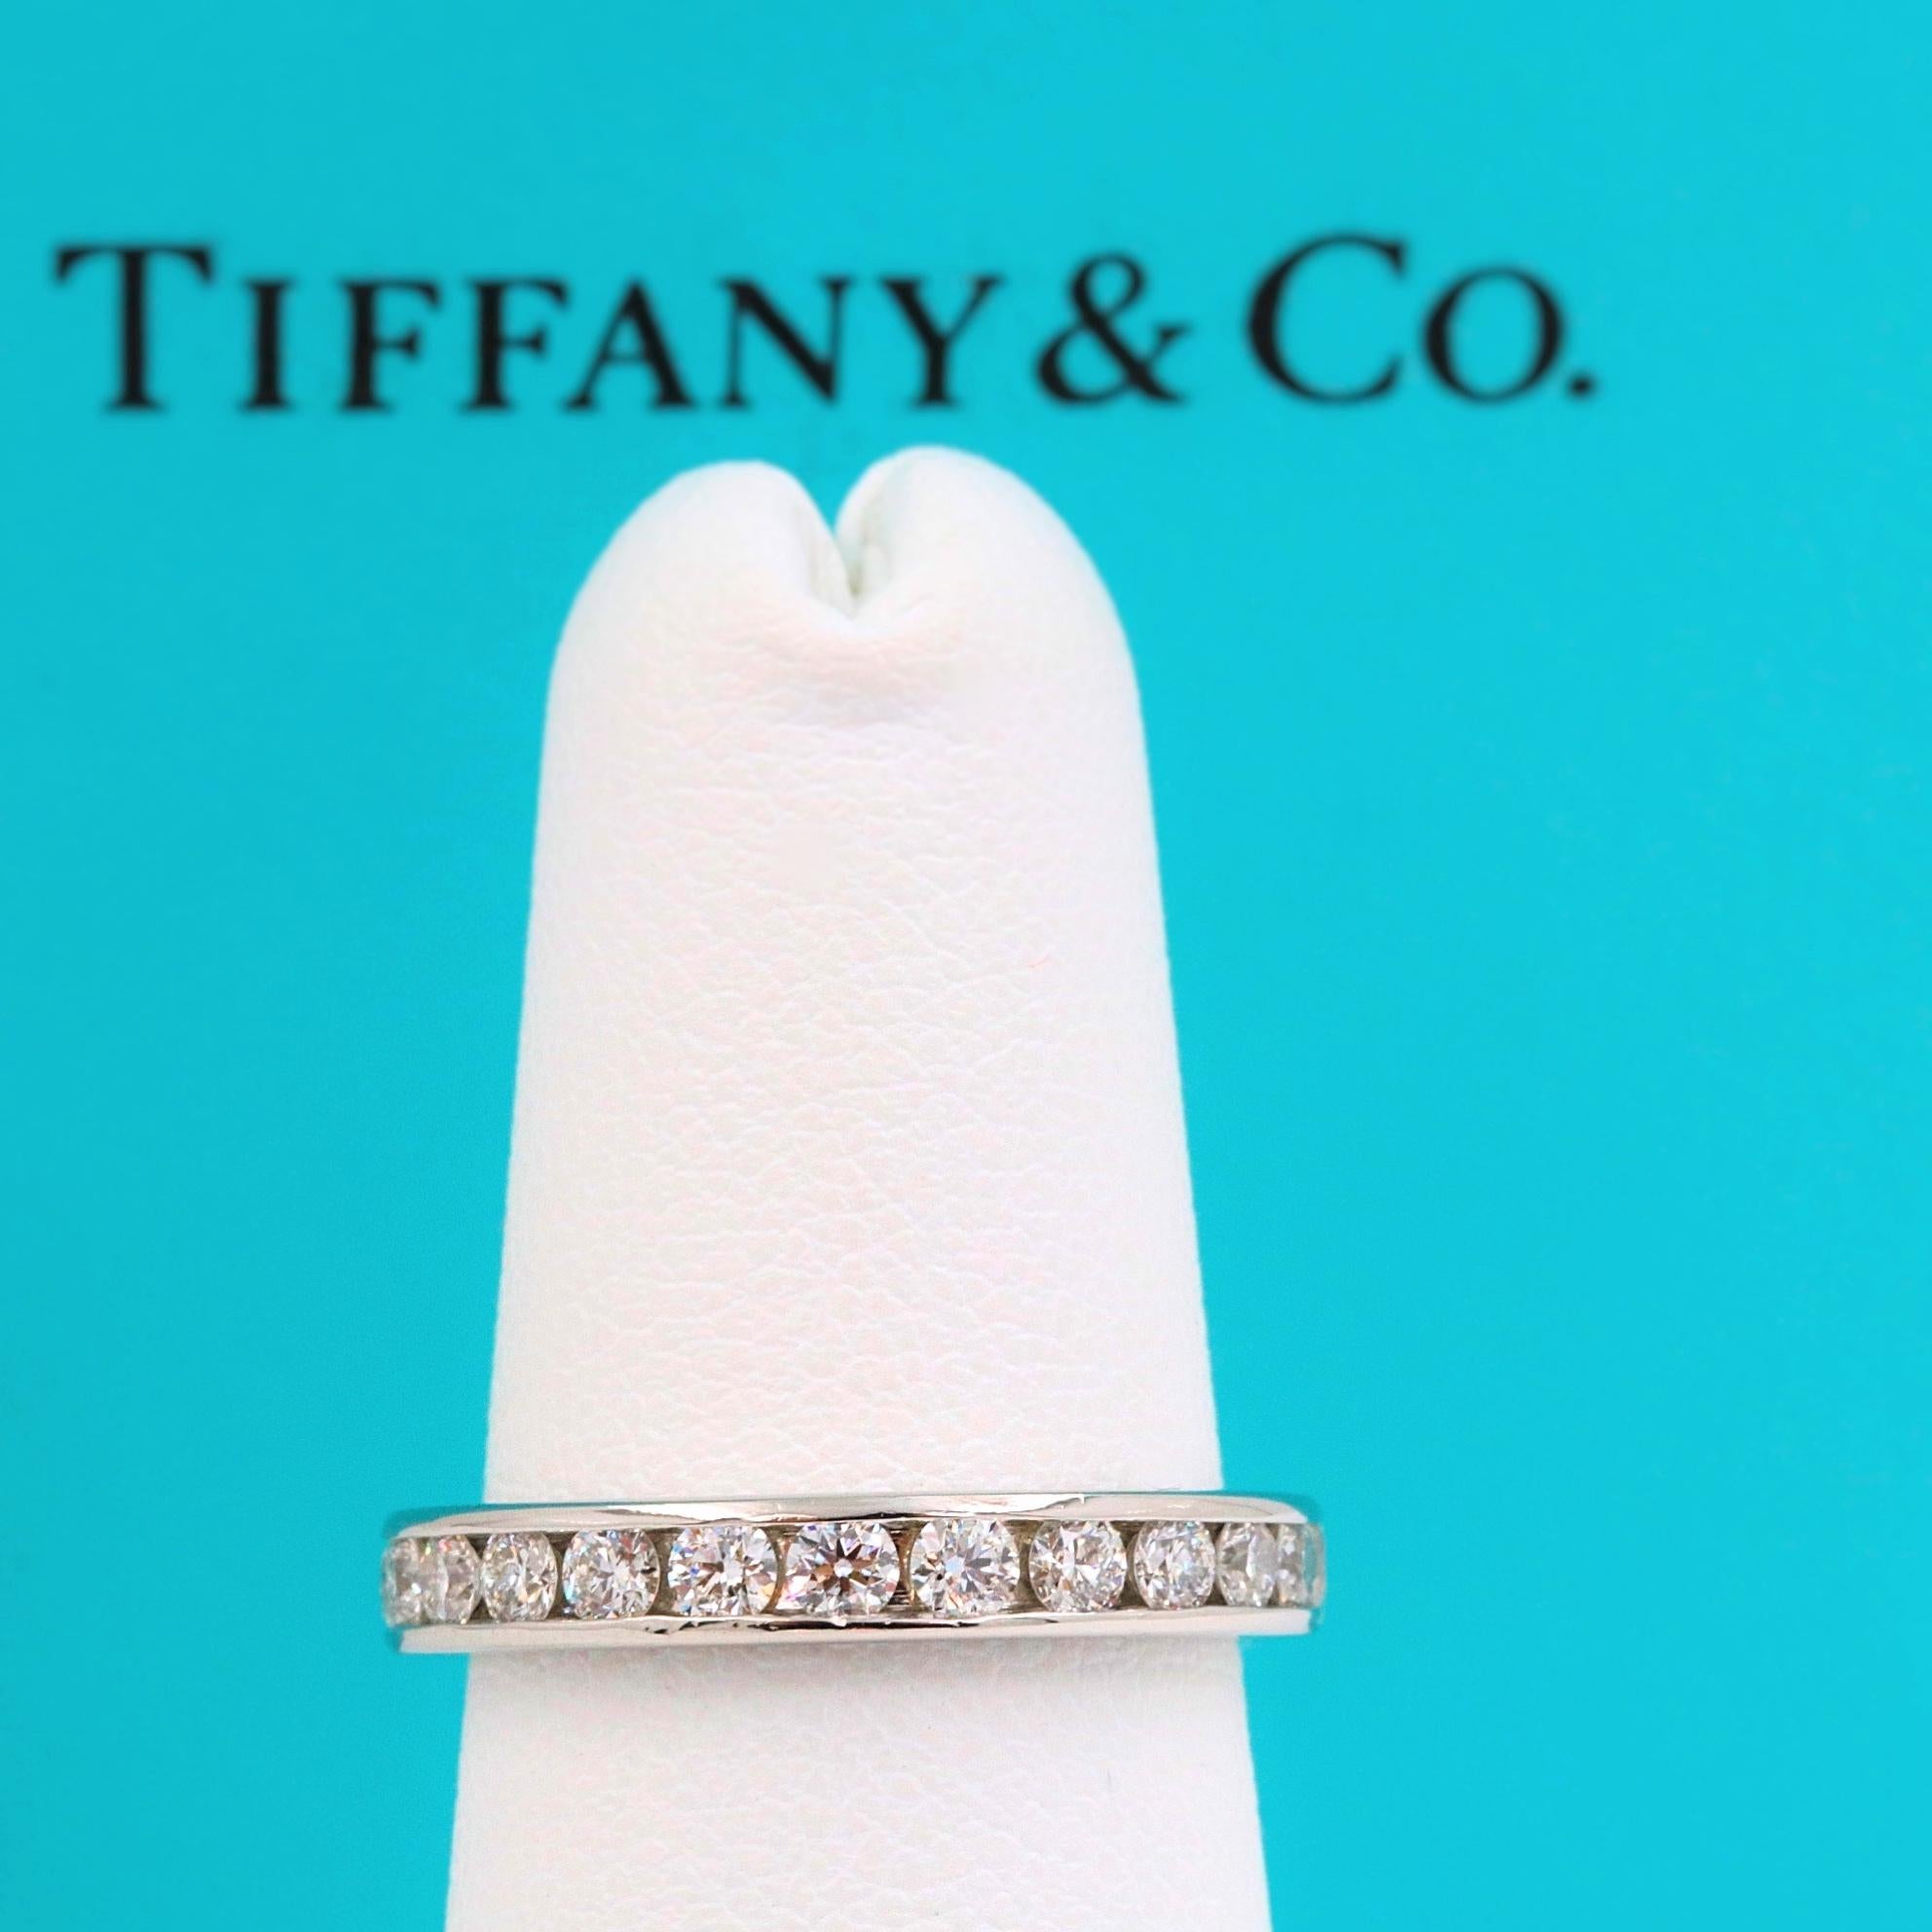 Tiffany & Co. 

Le style :  Anneau de mariage à diamant en forme de cercle
Métal :  Platine PT950
Largeur :  3 MM
Taille :  4.25 
Poids total en carats :  1,00 tcw
Forme du diamant :  Brillant rond
Couleur et pureté du diamant :  G - VVS
Hallmark : 